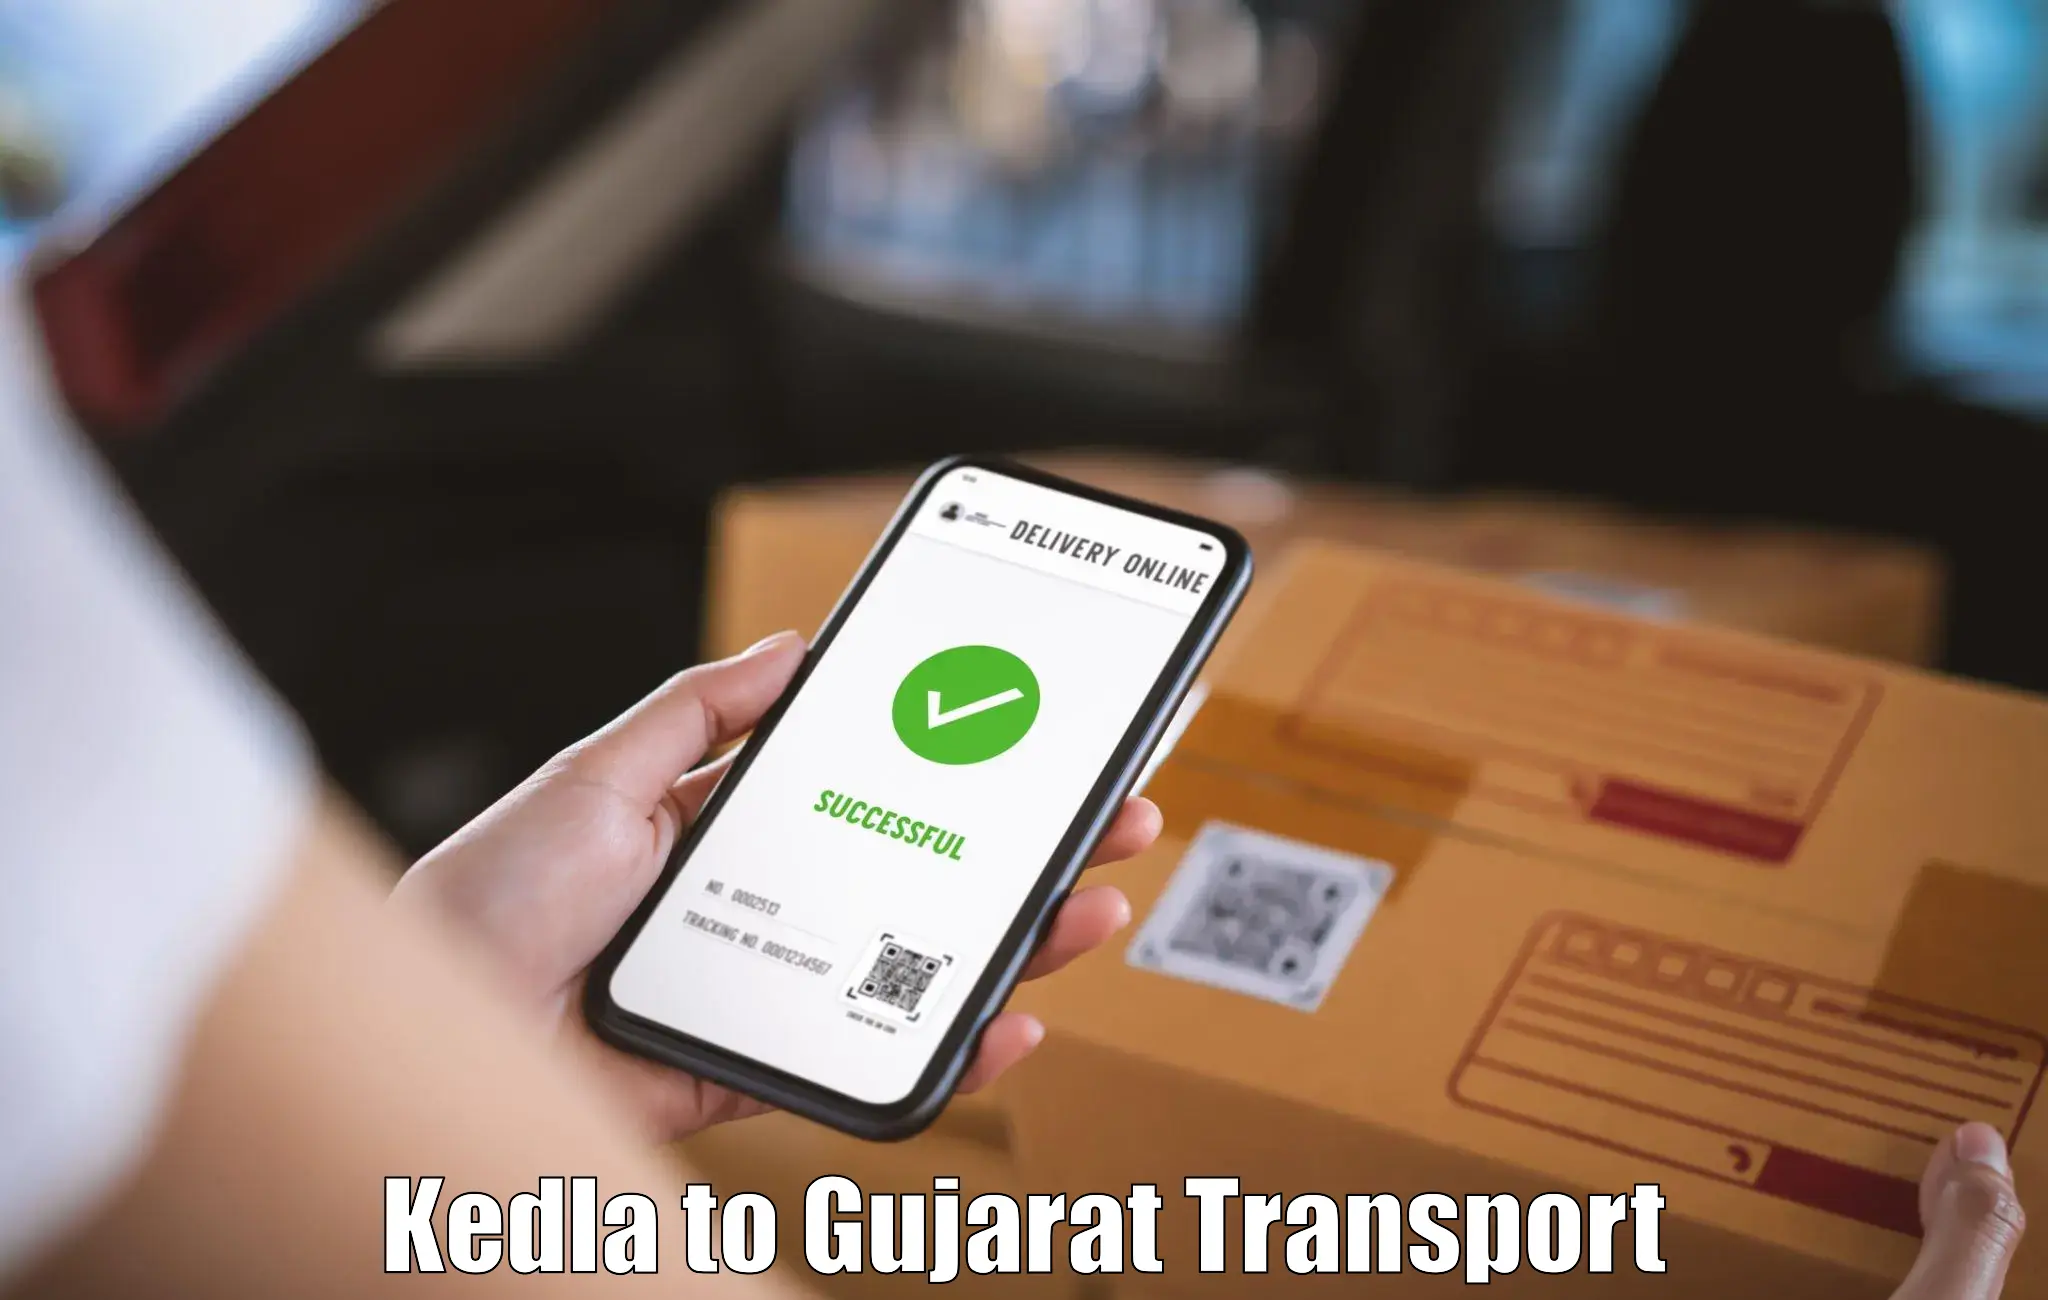 Parcel transport services Kedla to Vapi